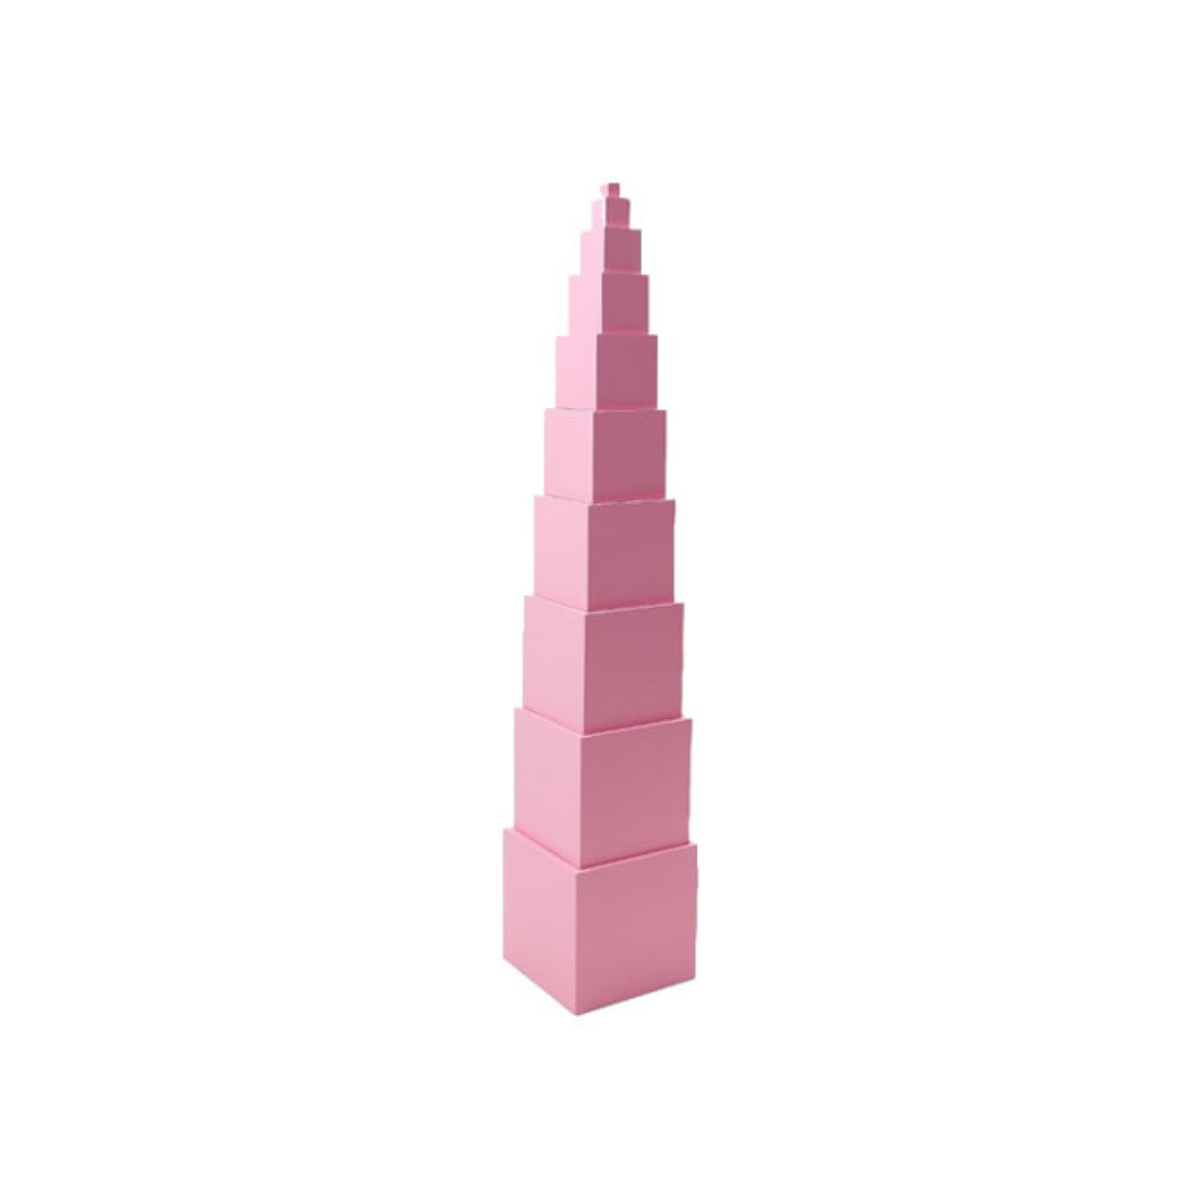 【GAM】Pink Tower (ピンクタワー)